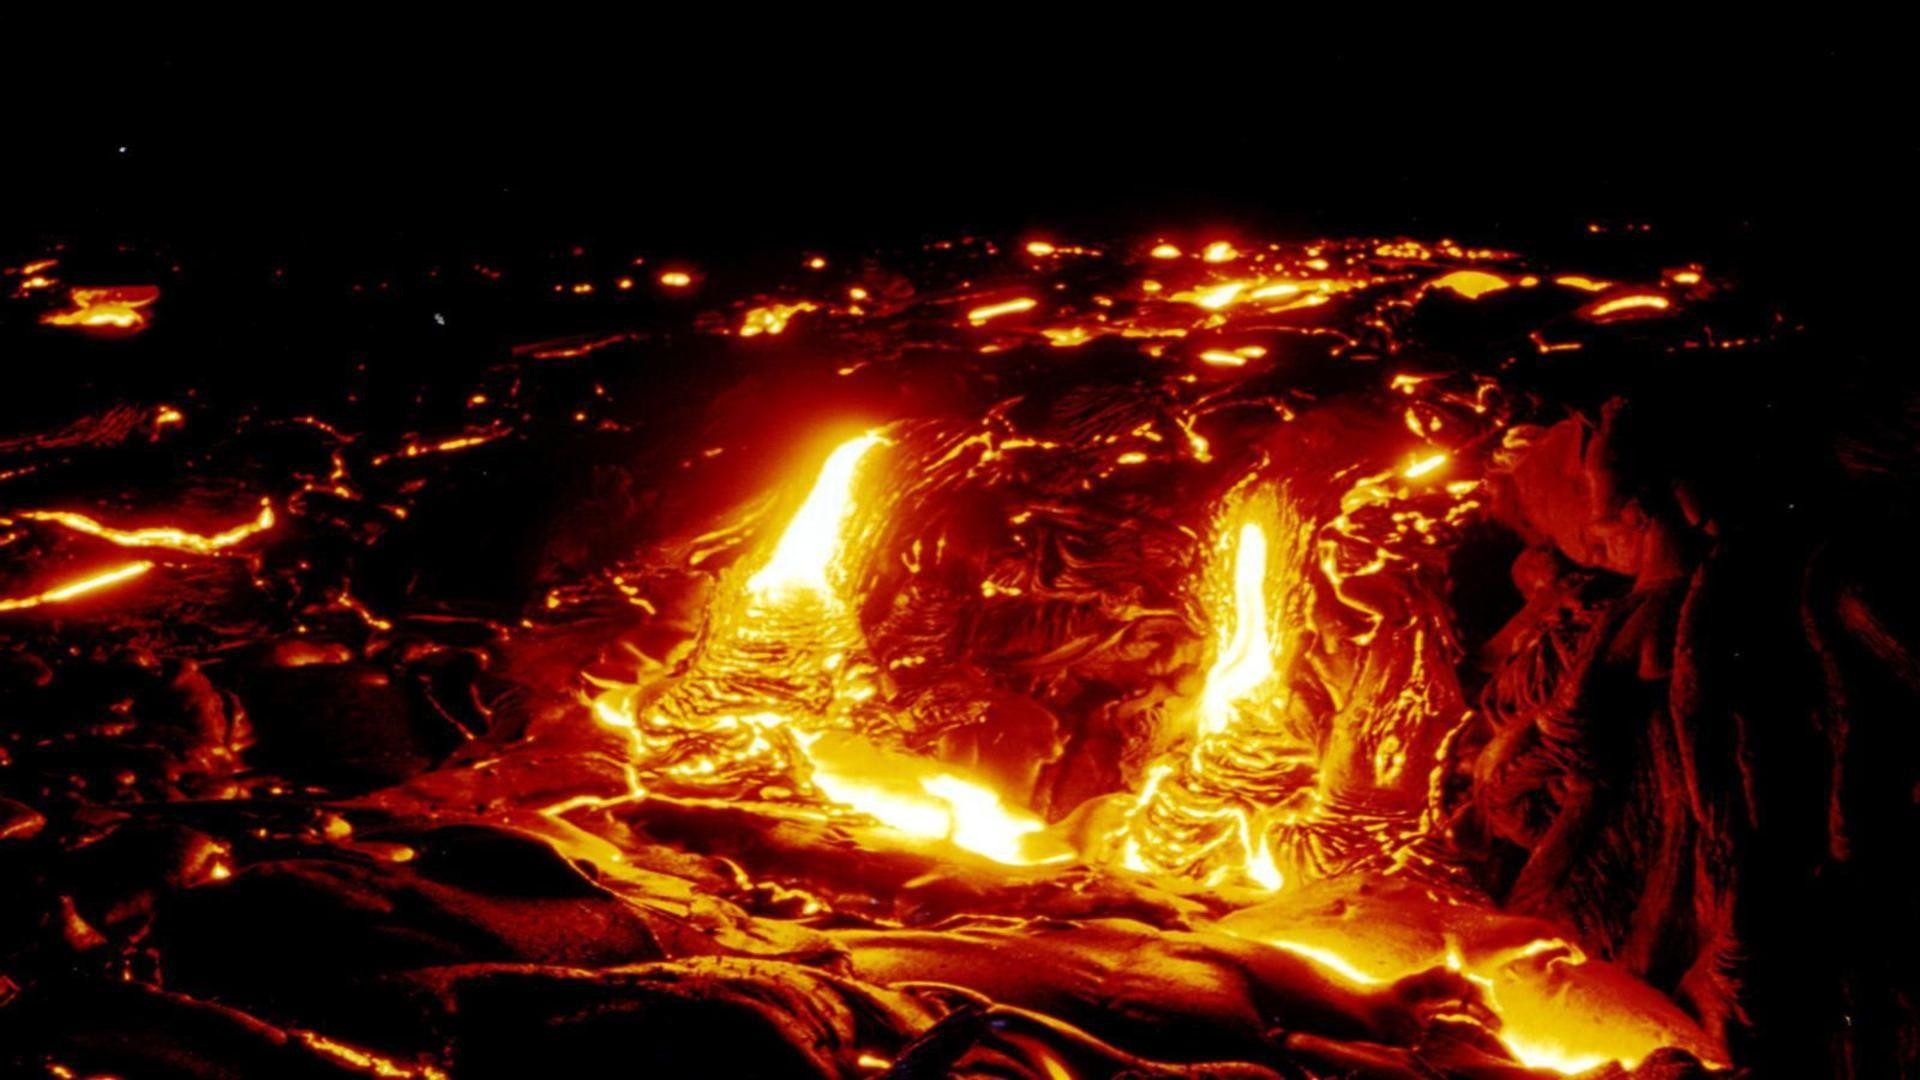 溶岩の壁紙,火,火炎,熱,たき火,水